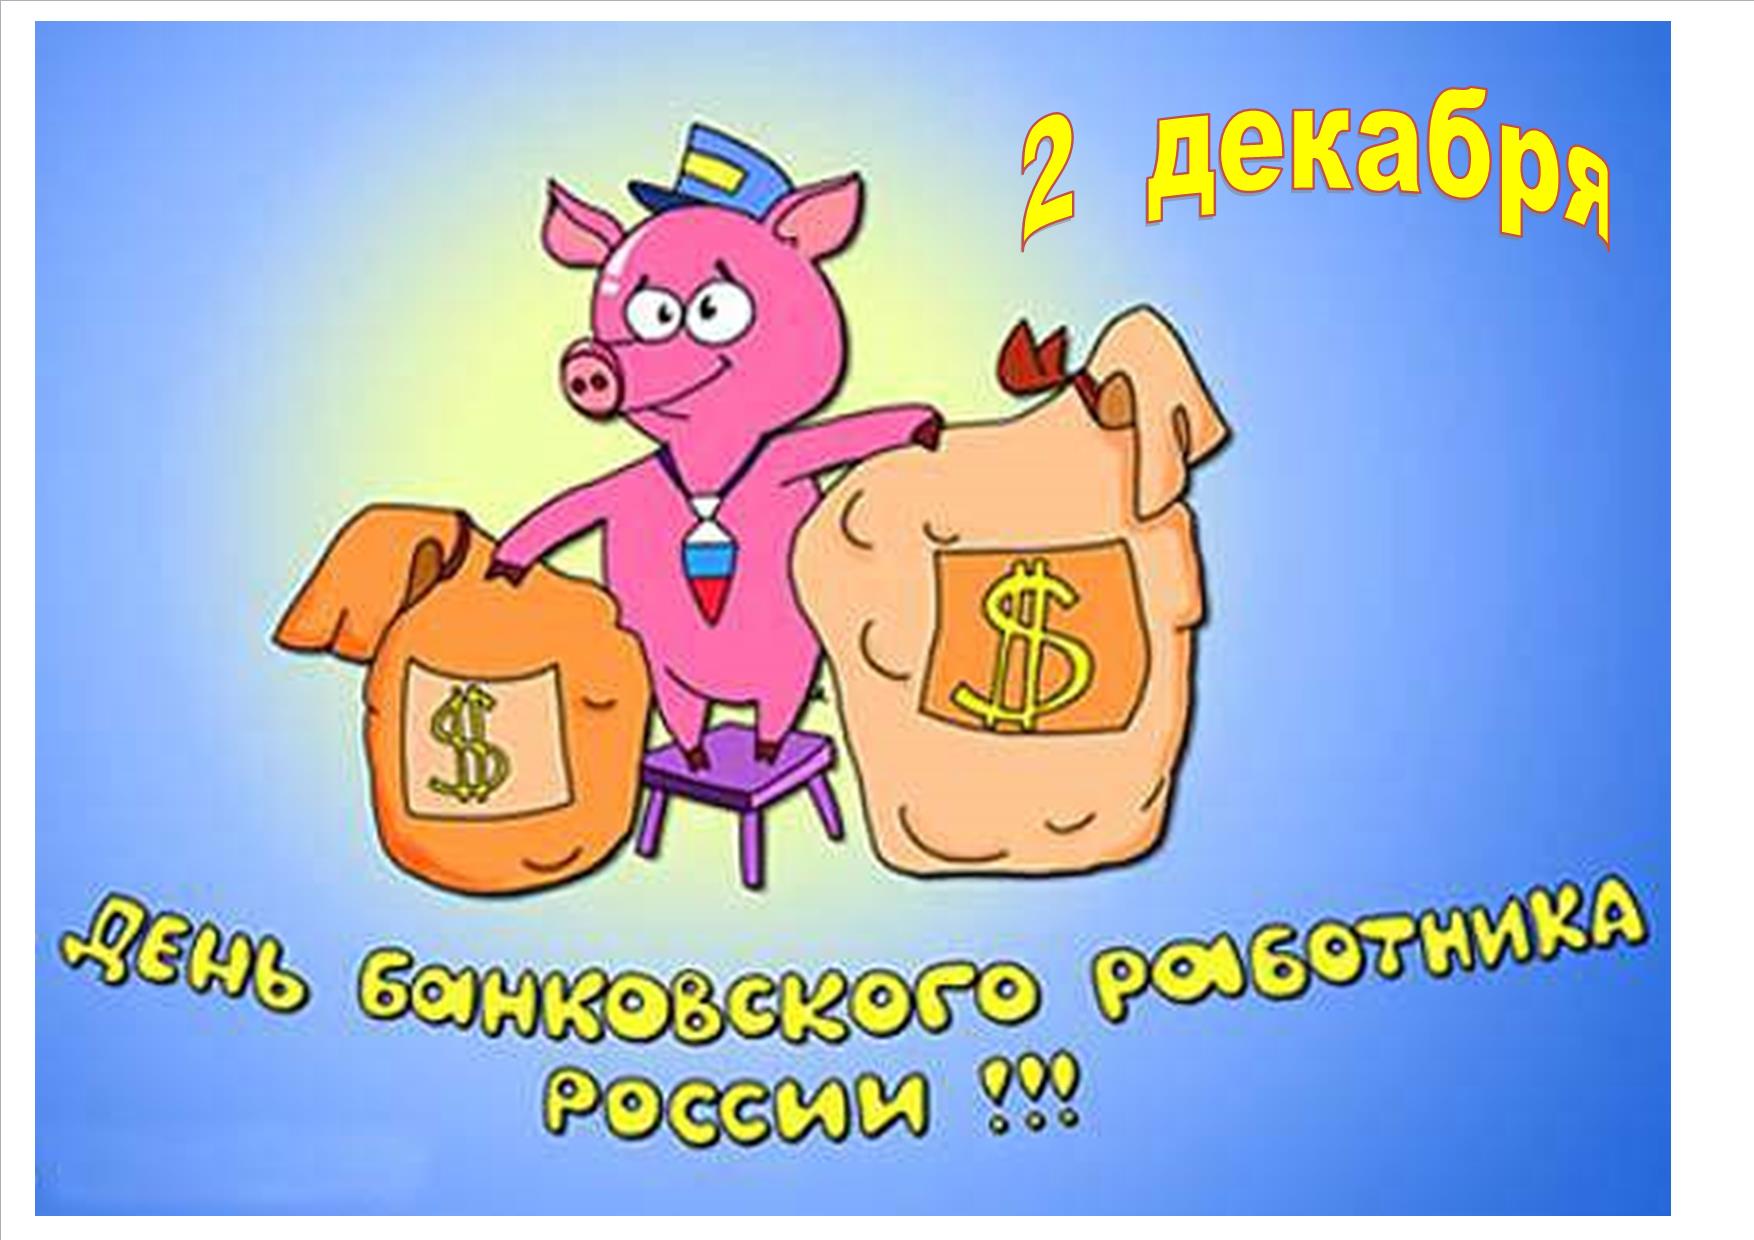 День банковского работника России!